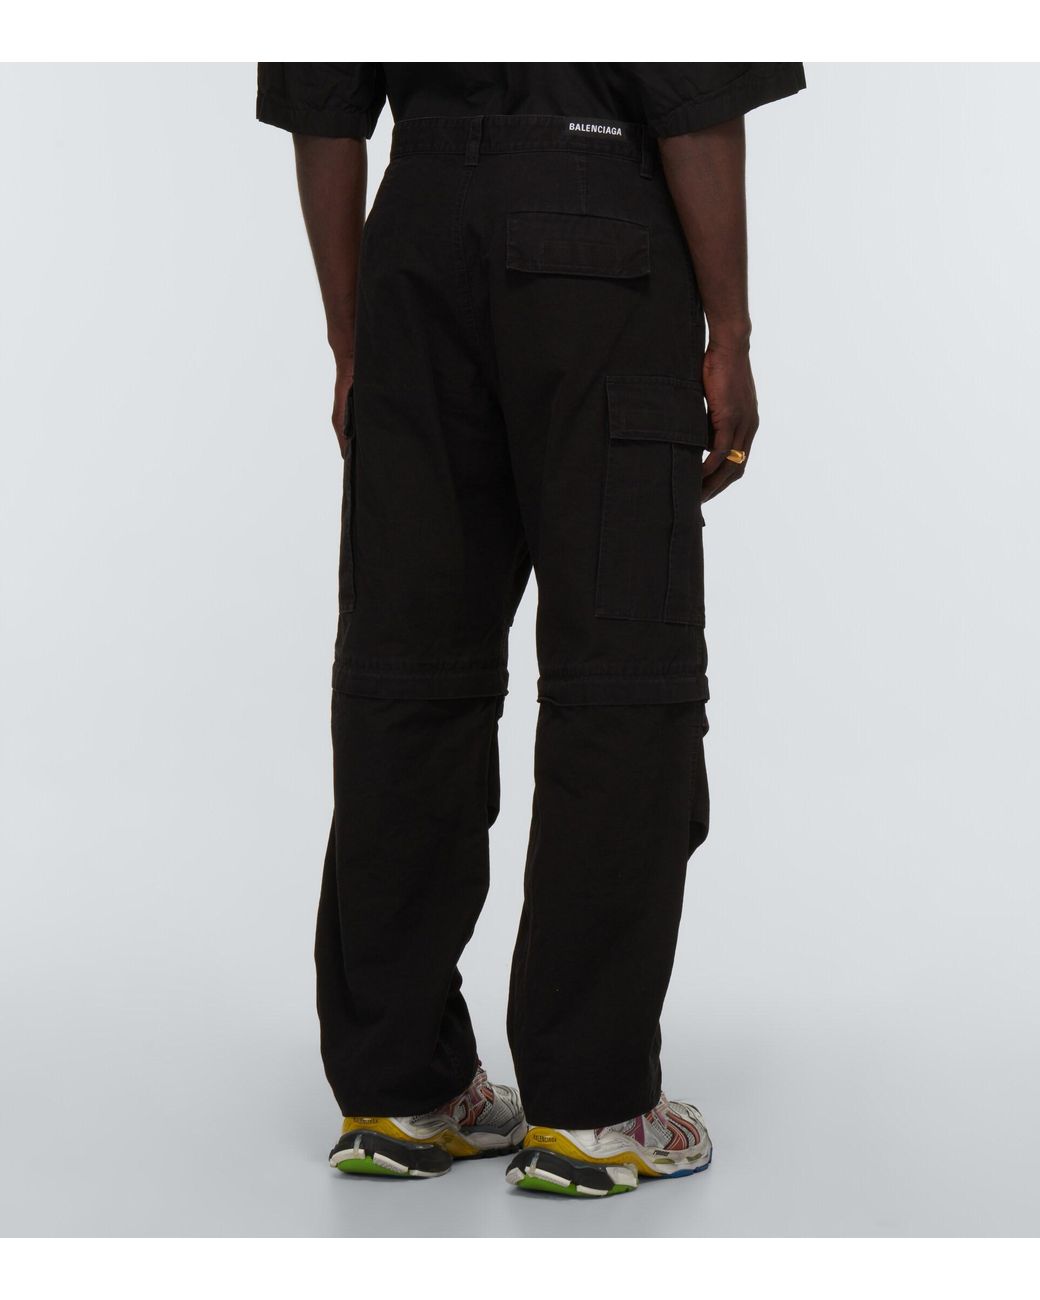 Nike x Feng Chen Wang Pro Convertible Cargo Pants Black Men's - FW23 - US